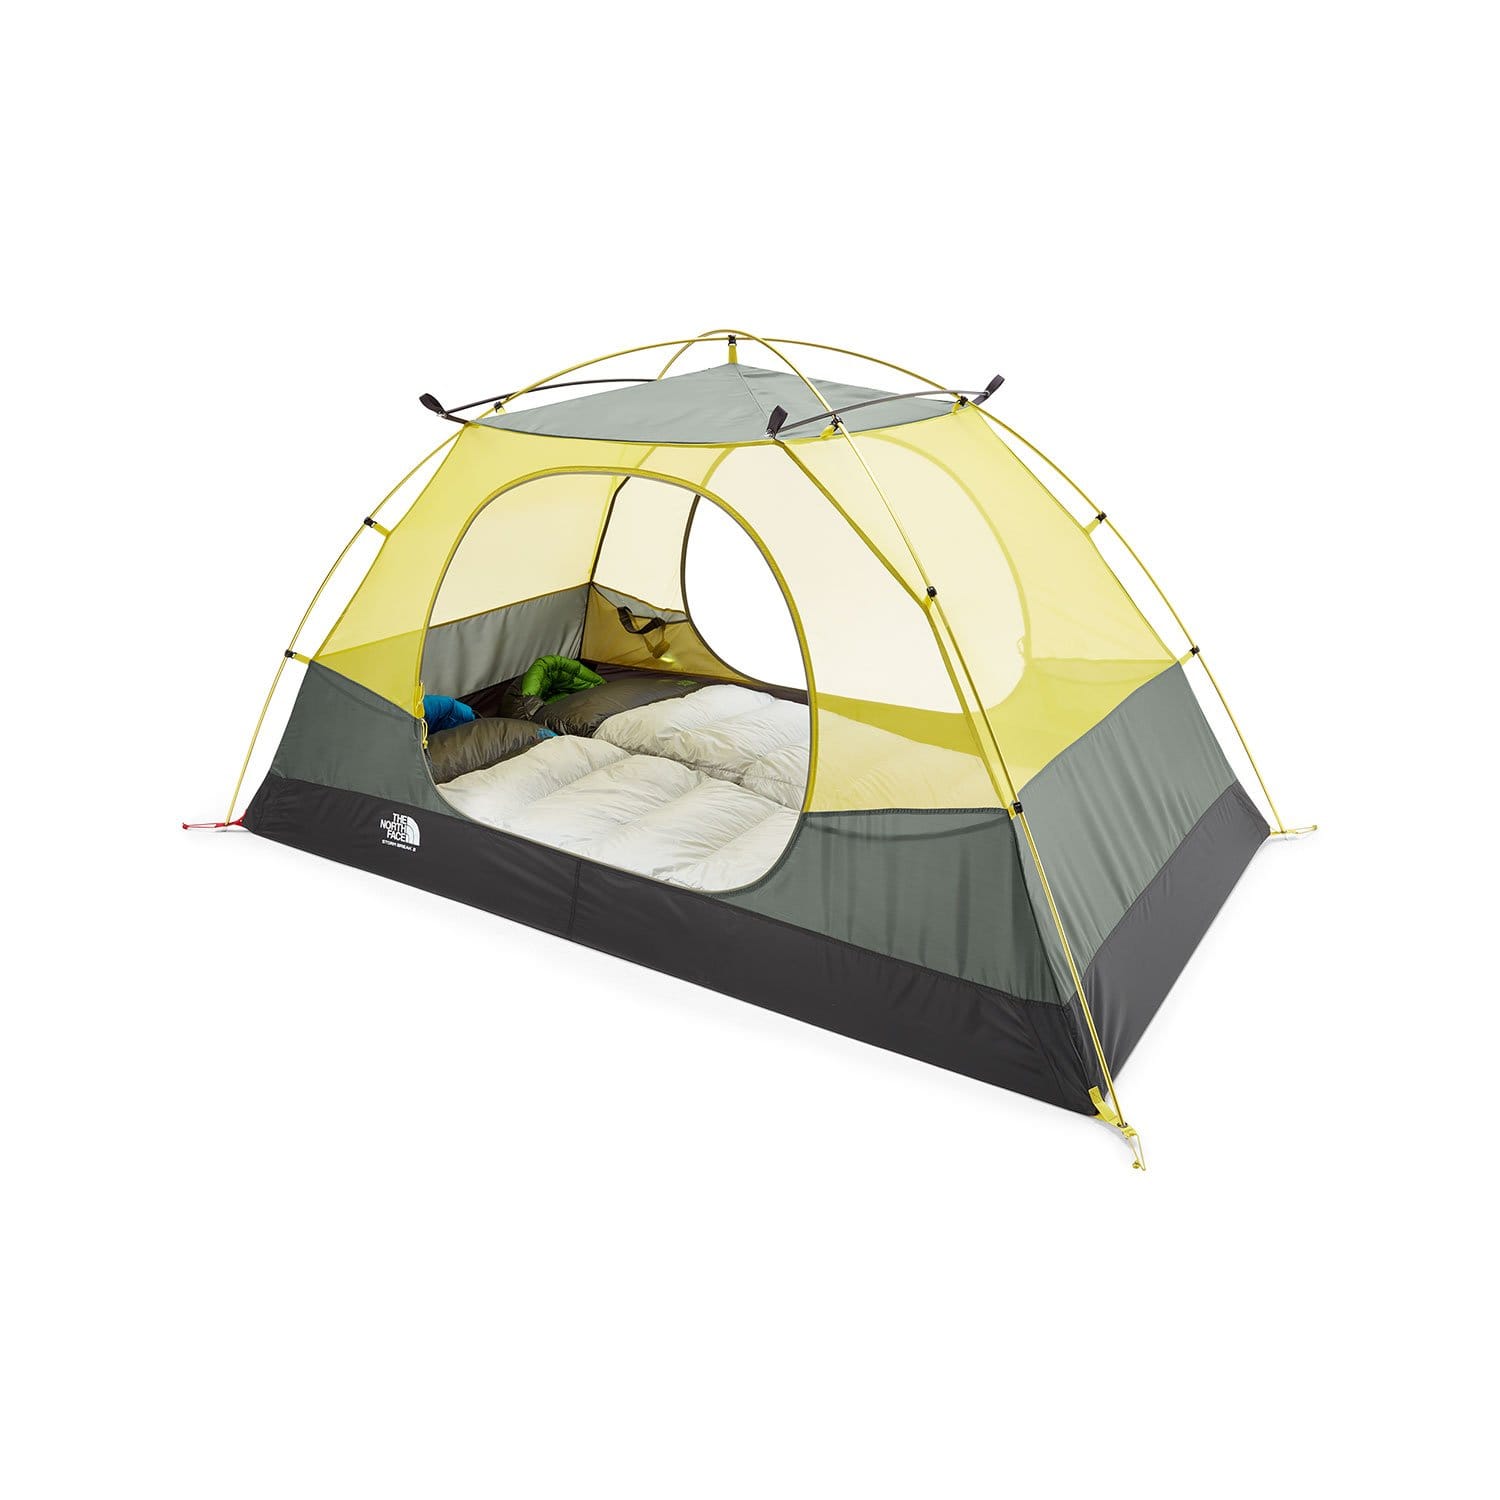 The North Face Stormbreak 2 Tent Campmor